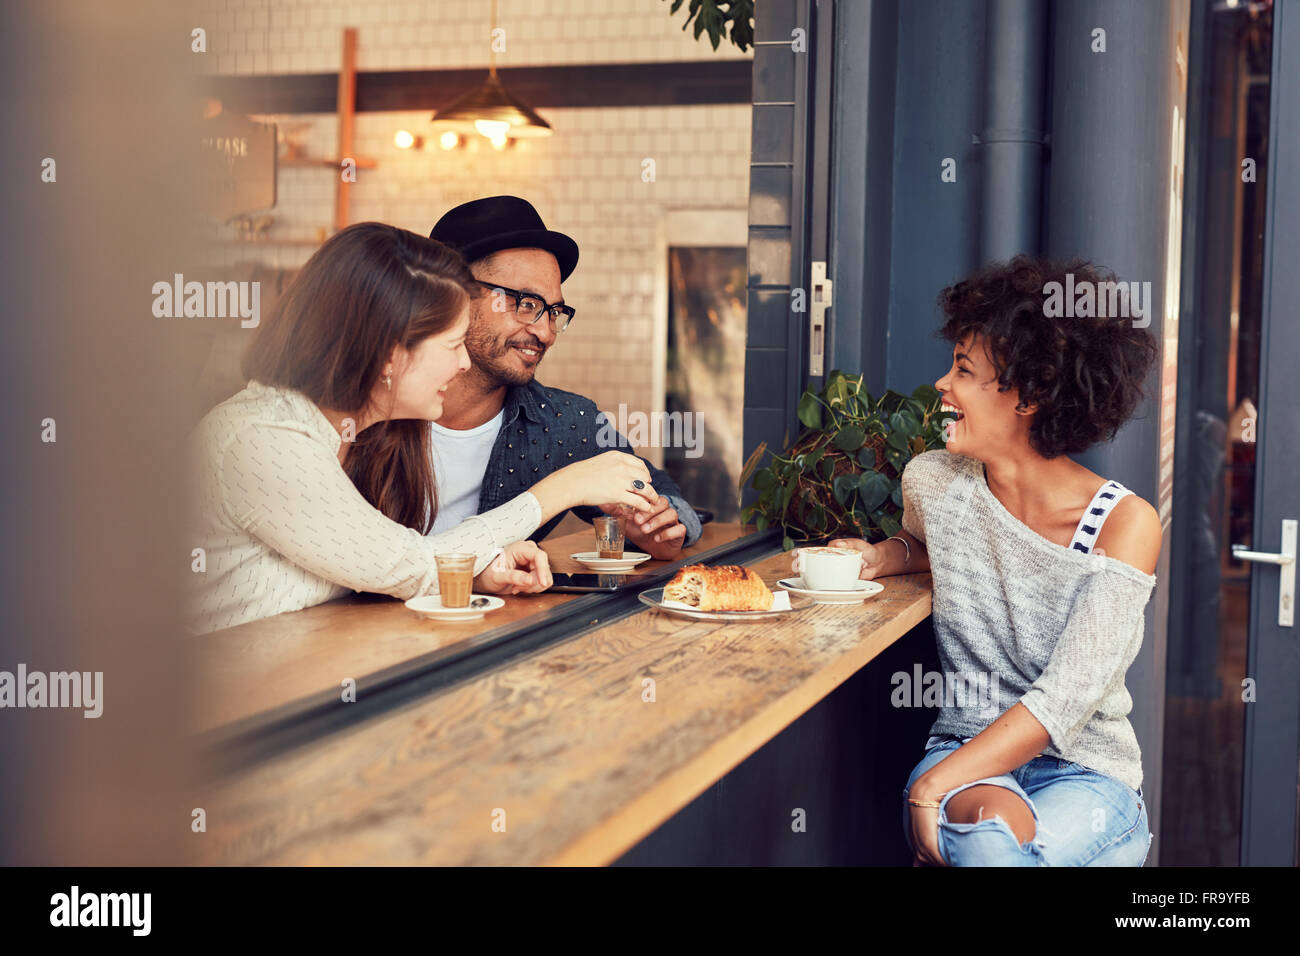 Ritratto di felice giovani seduti insieme ad un cafe avente un po' di cibo e caffè. Gruppo di amici riuniti in un coffee shop Foto Stock